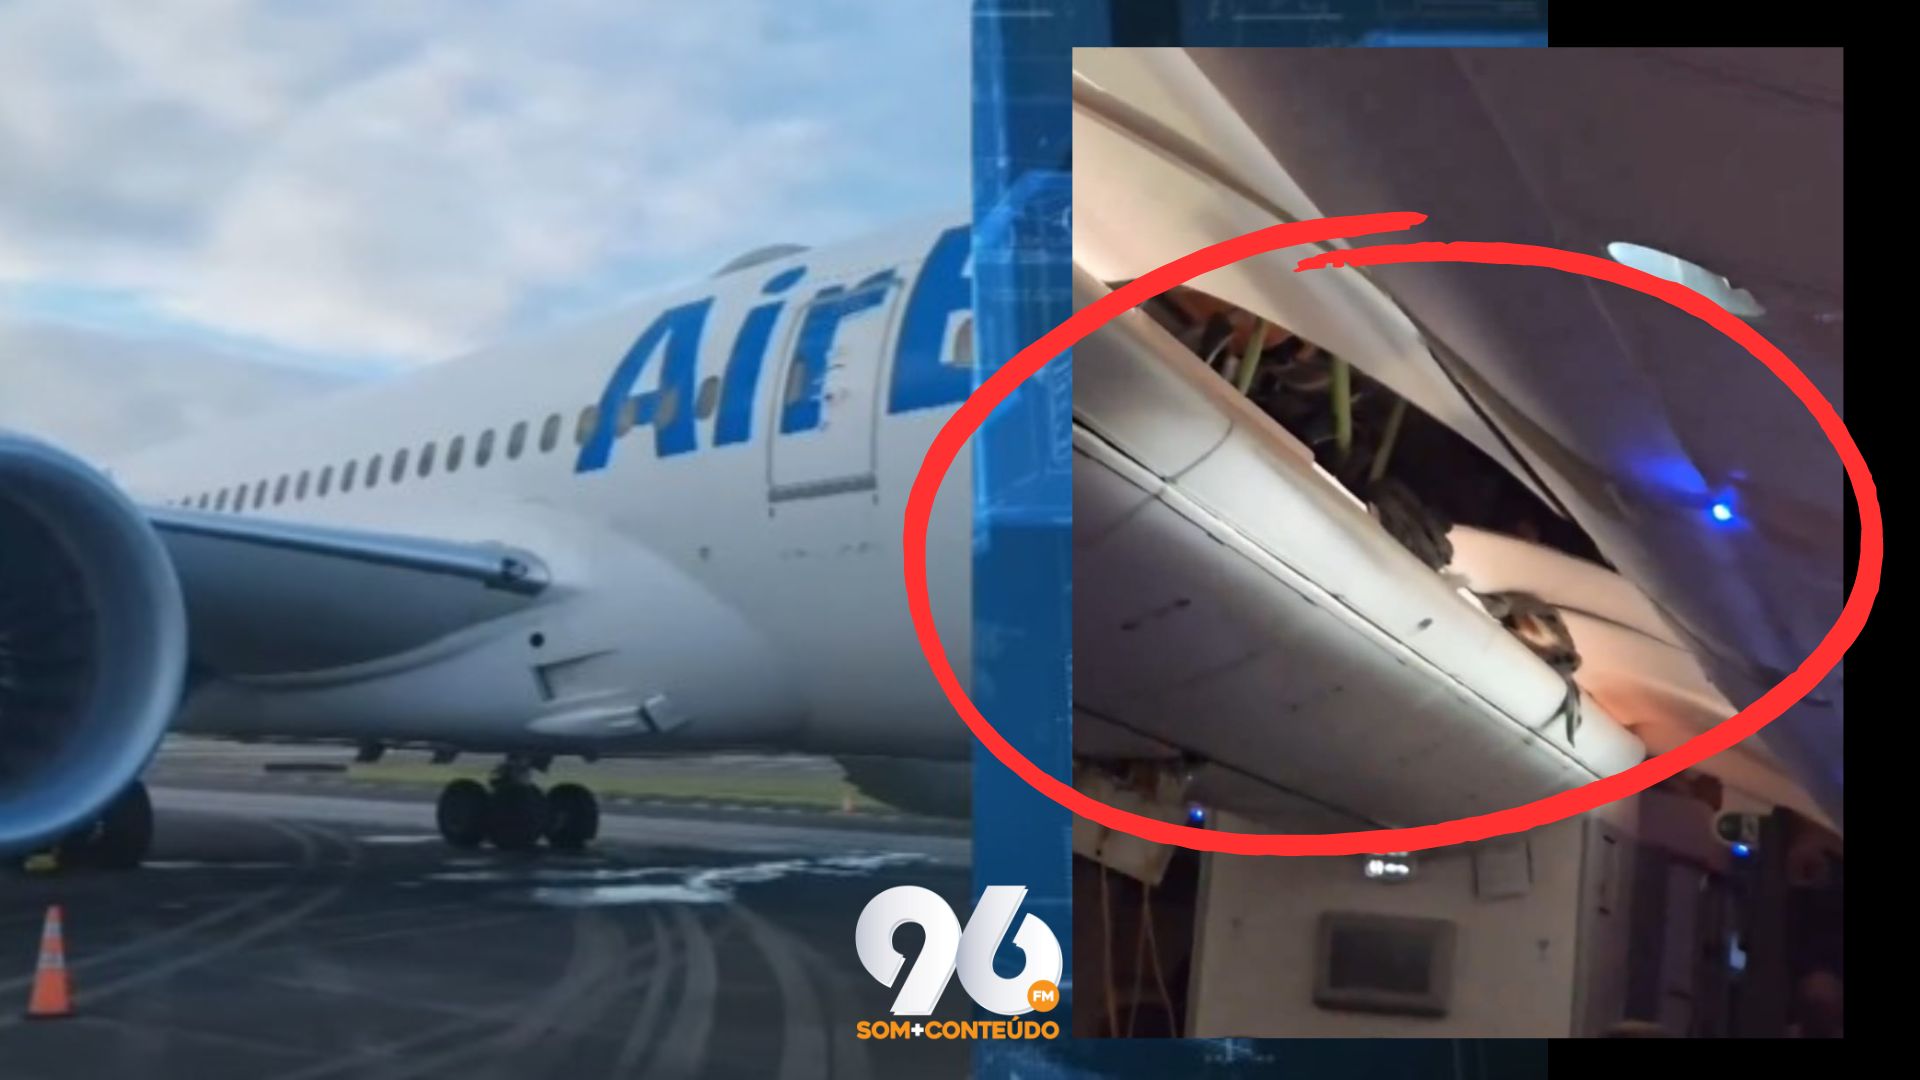 [VIDEO] Air Europa: Imagens mostram teto do avião danificado após ser atingido por passageiros sem cinto